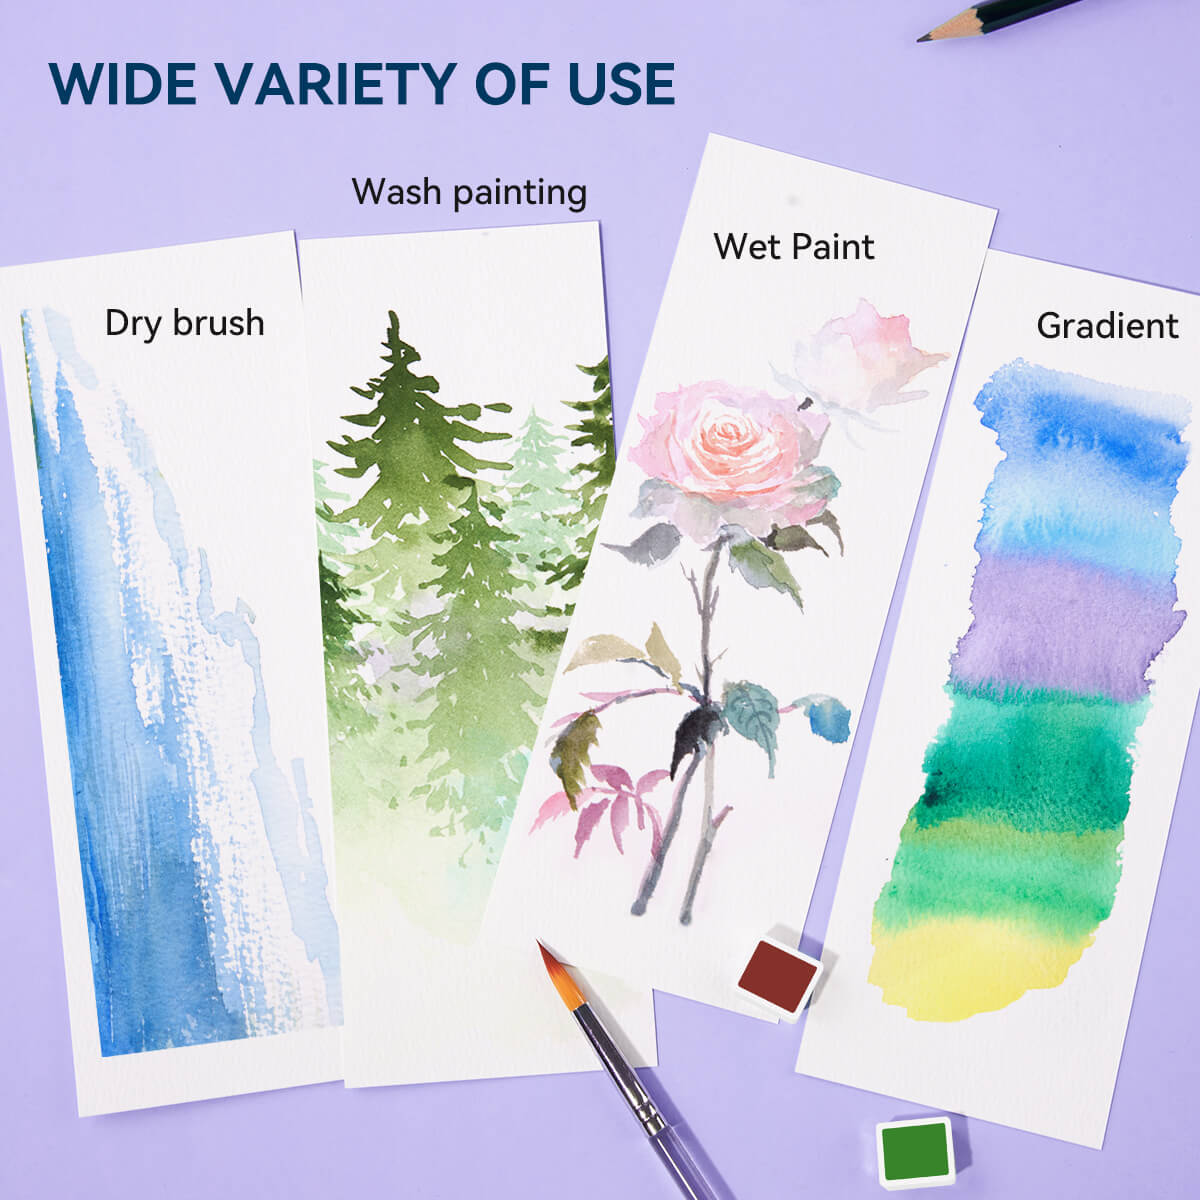 MeiLiang – ensemble de peinture aquarelle solide, 52 couleurs Standard (boîte violette)